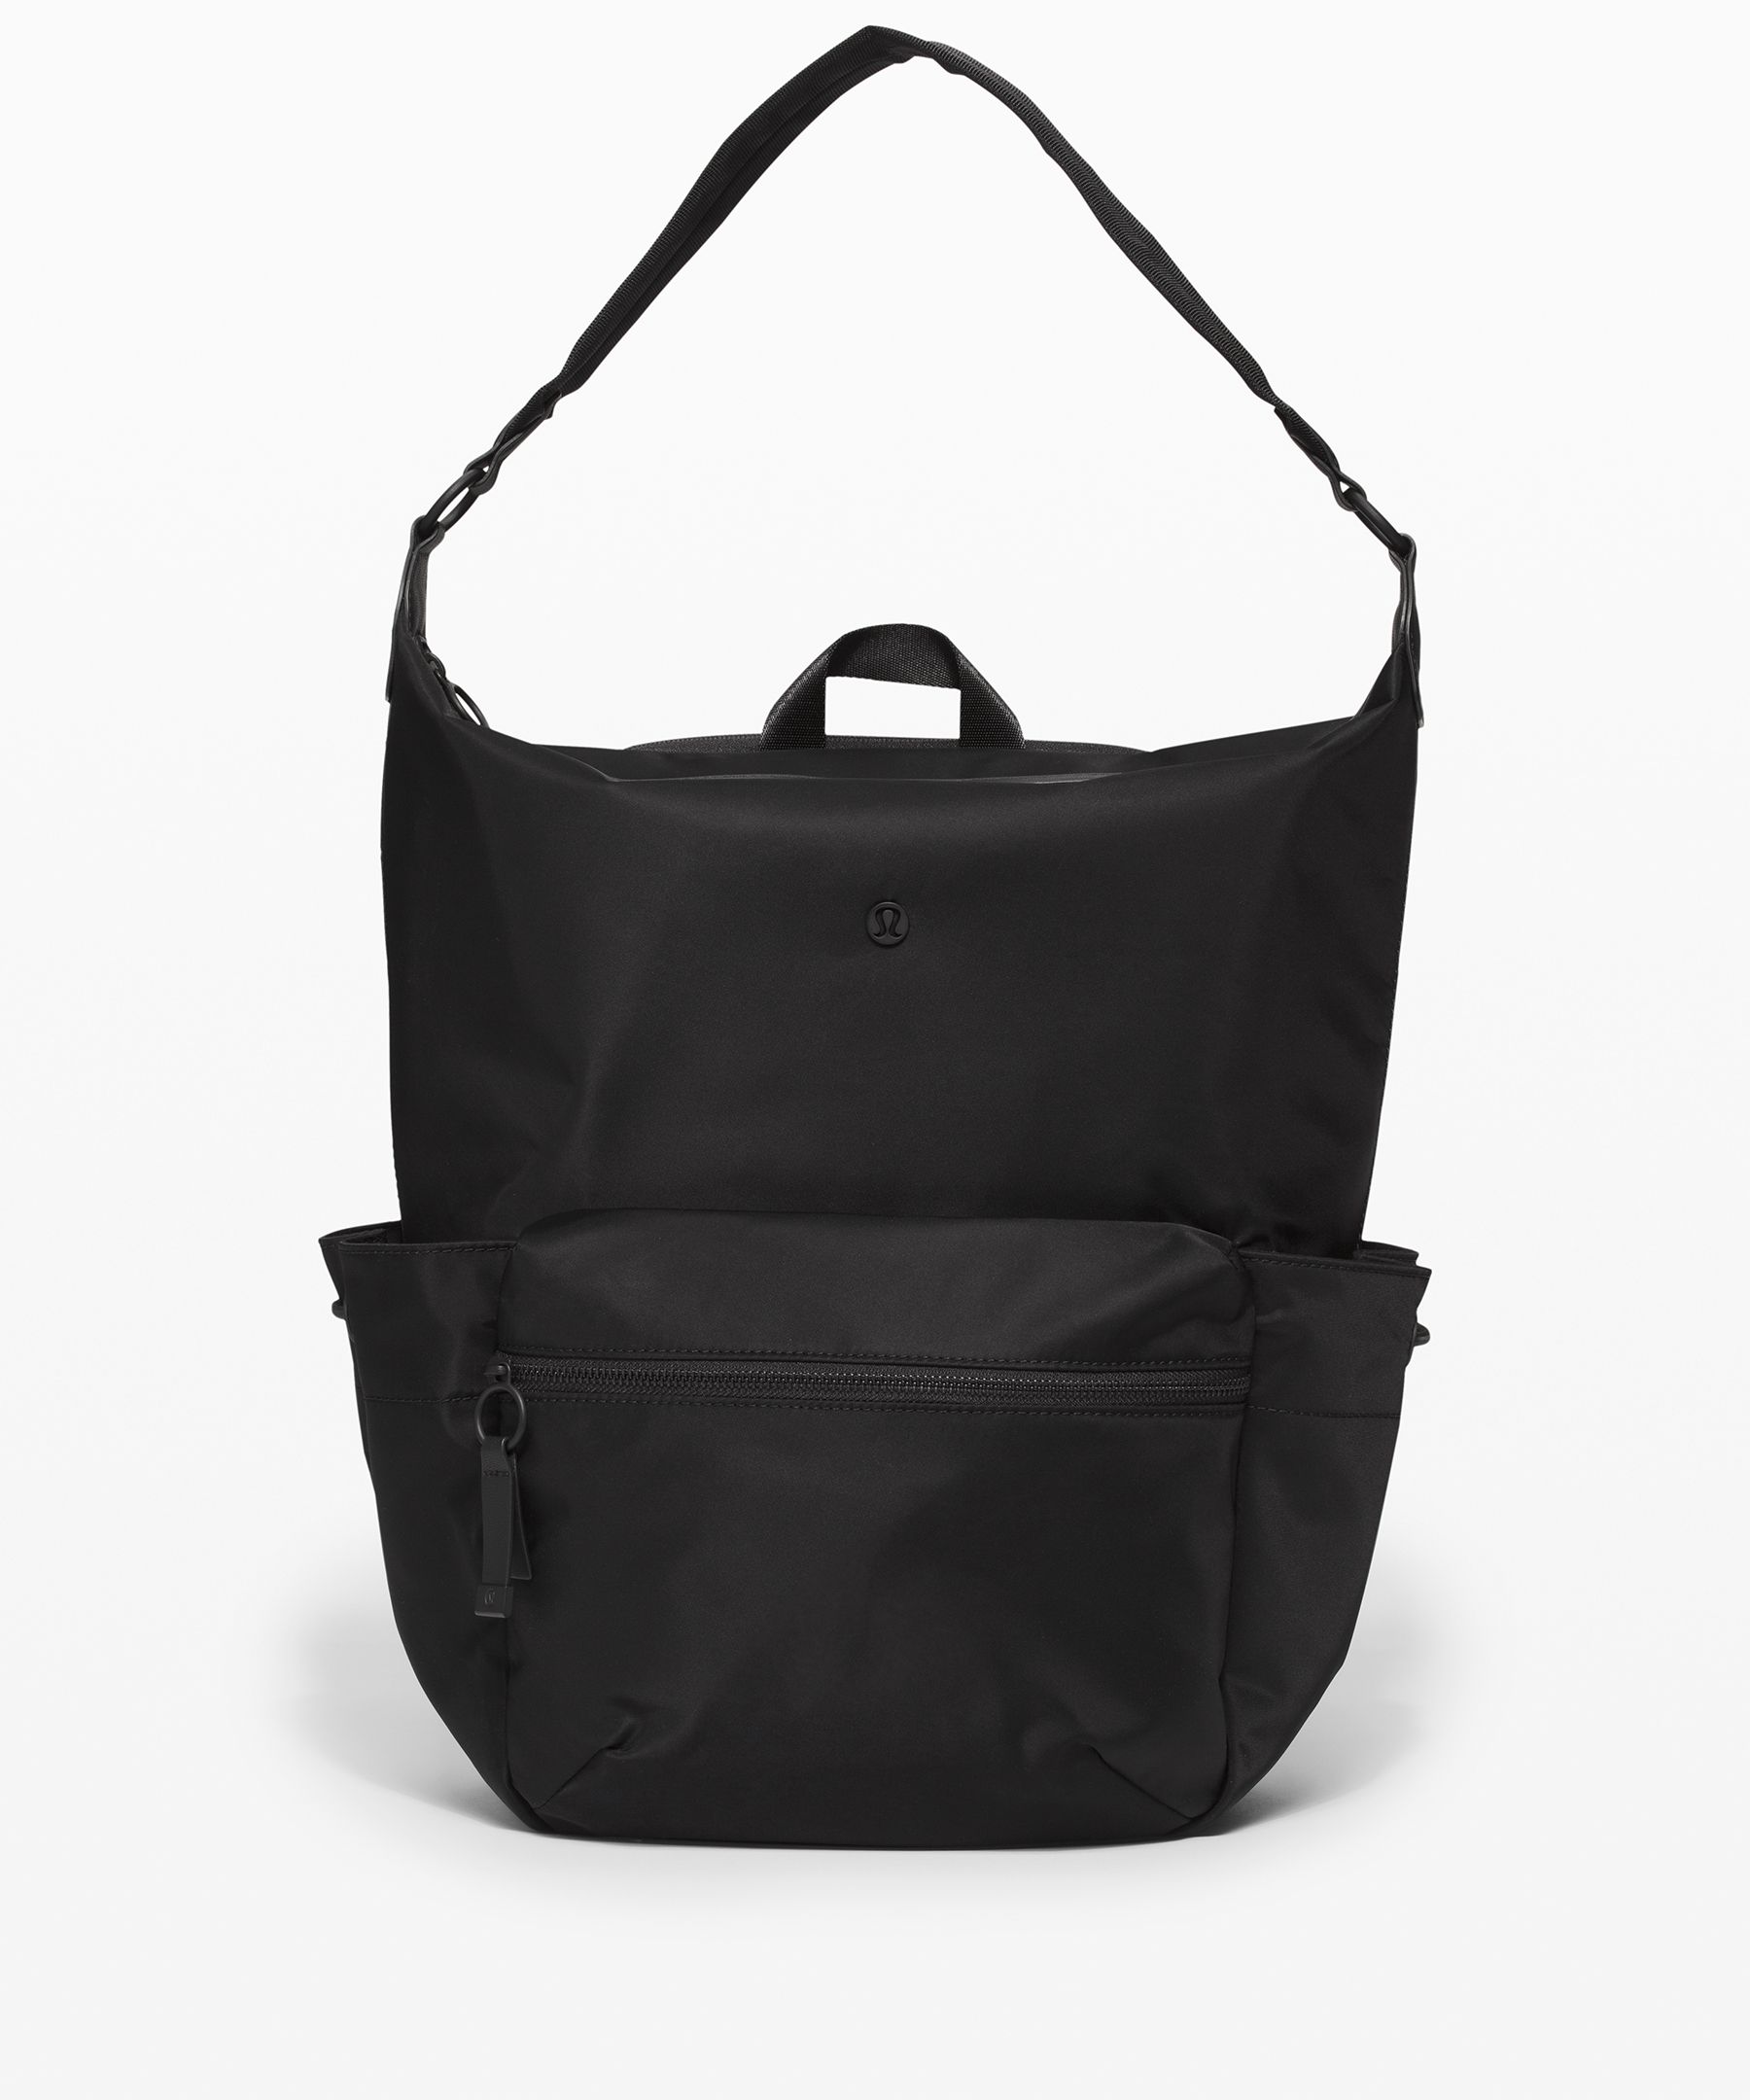 lululemon backpack for sale